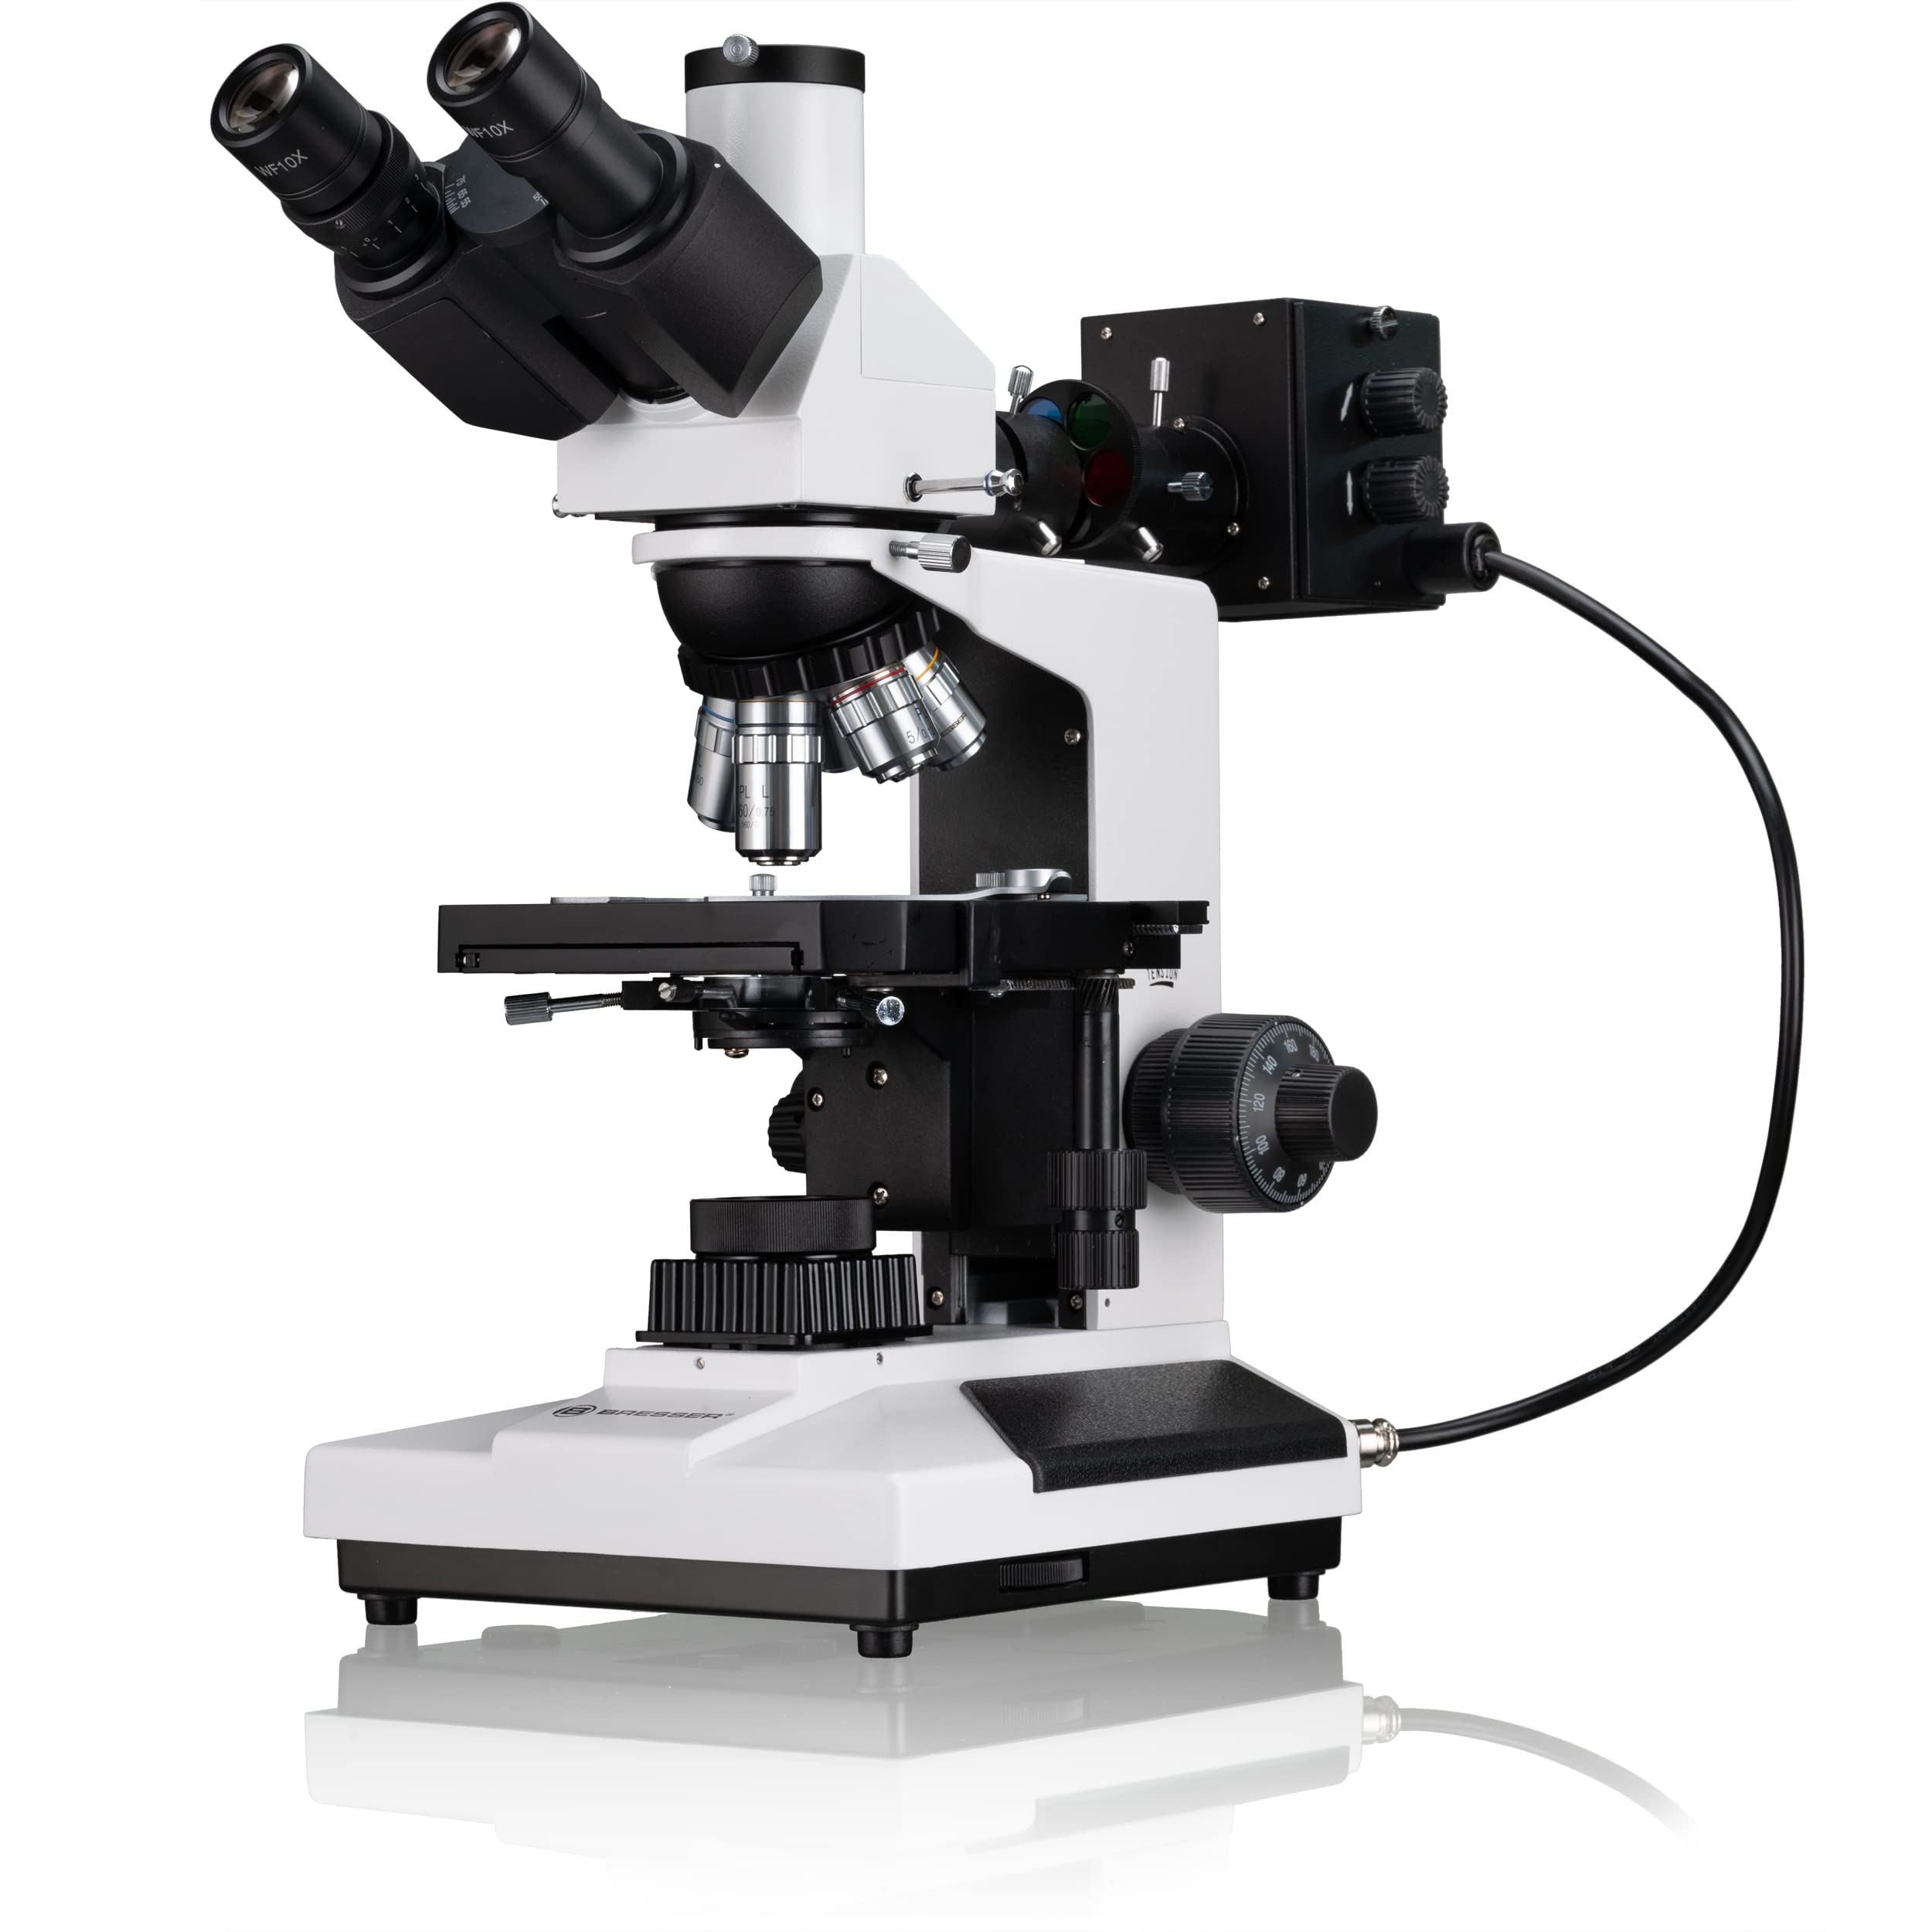 Bresser professionelles trinokulares Auflicht und Durchlicht Mikroskop Science ADL-601P 40-600x Vergrößerung, planachr. Objektive, koaxialer Kreuztisch, voll polarisierbare Beleuchtung, Kameratubus